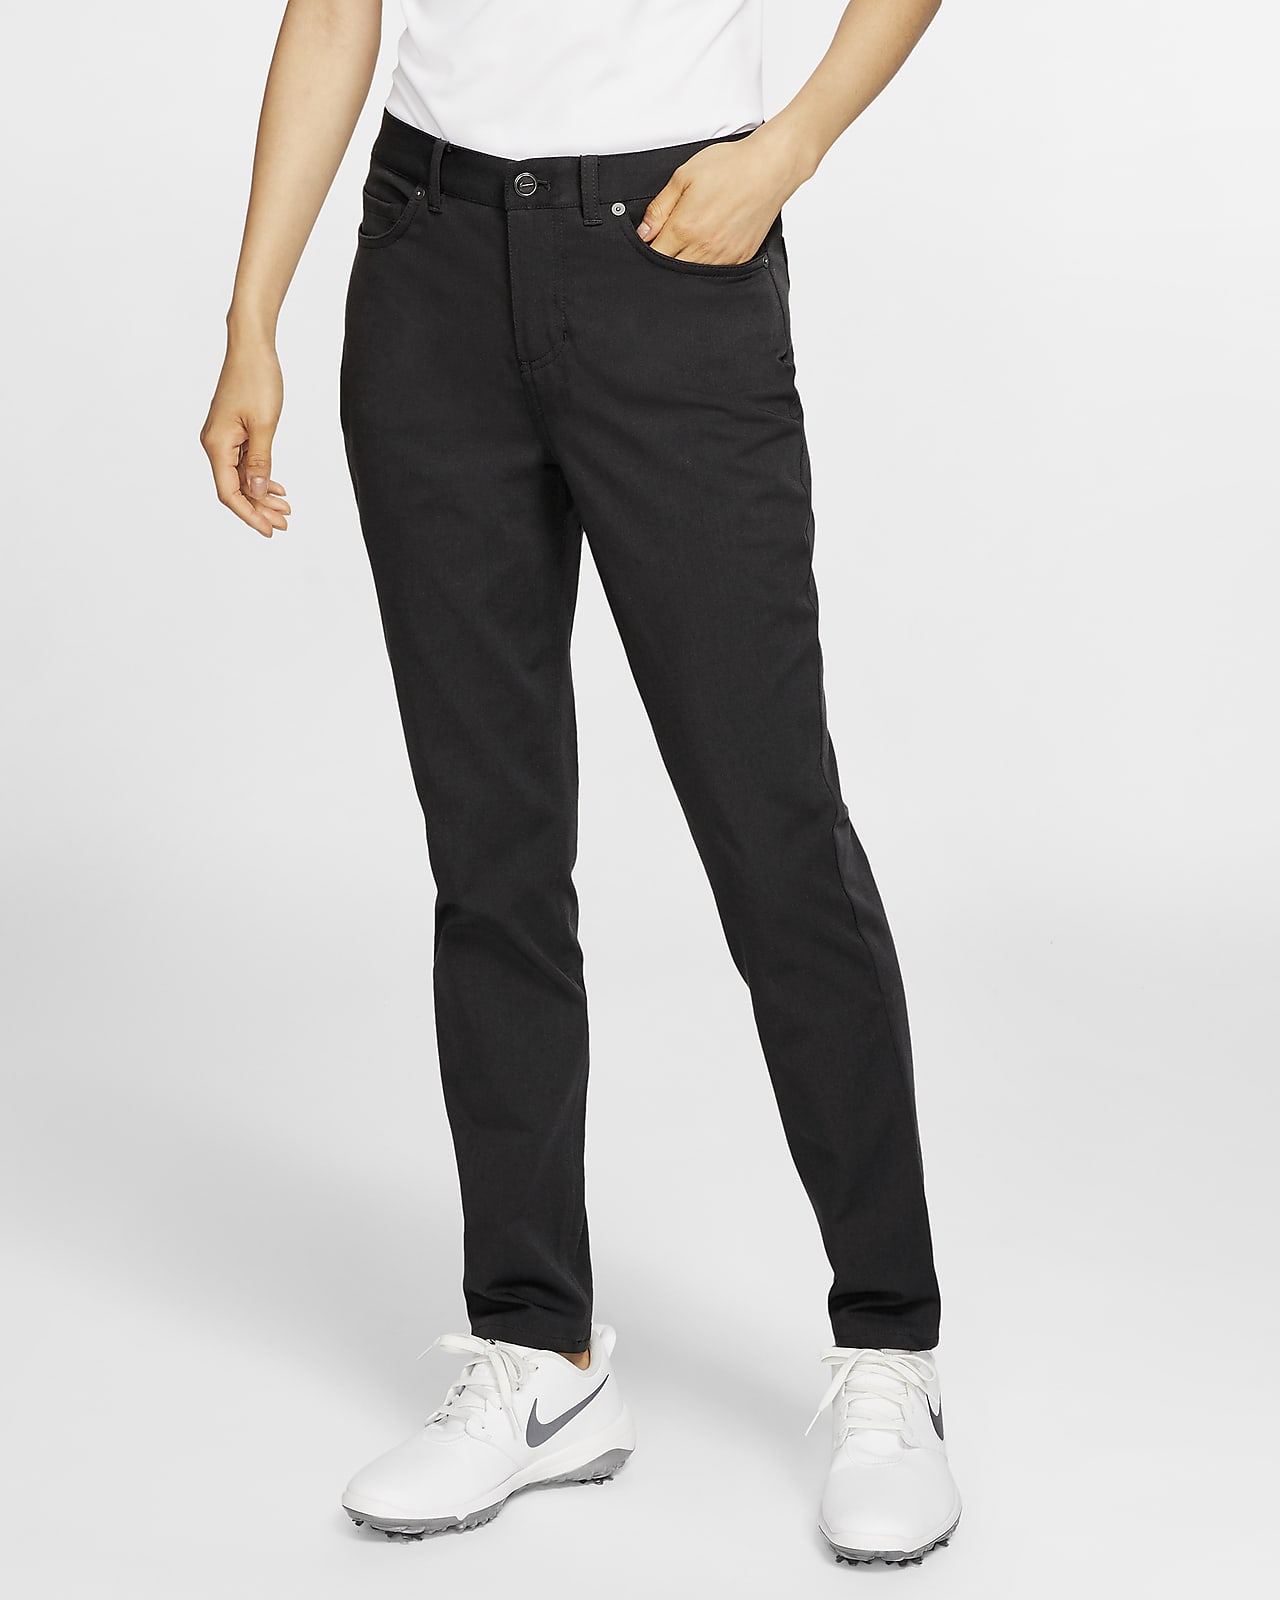 Nike Dar Kesimli Kadın Golf Pantolonu